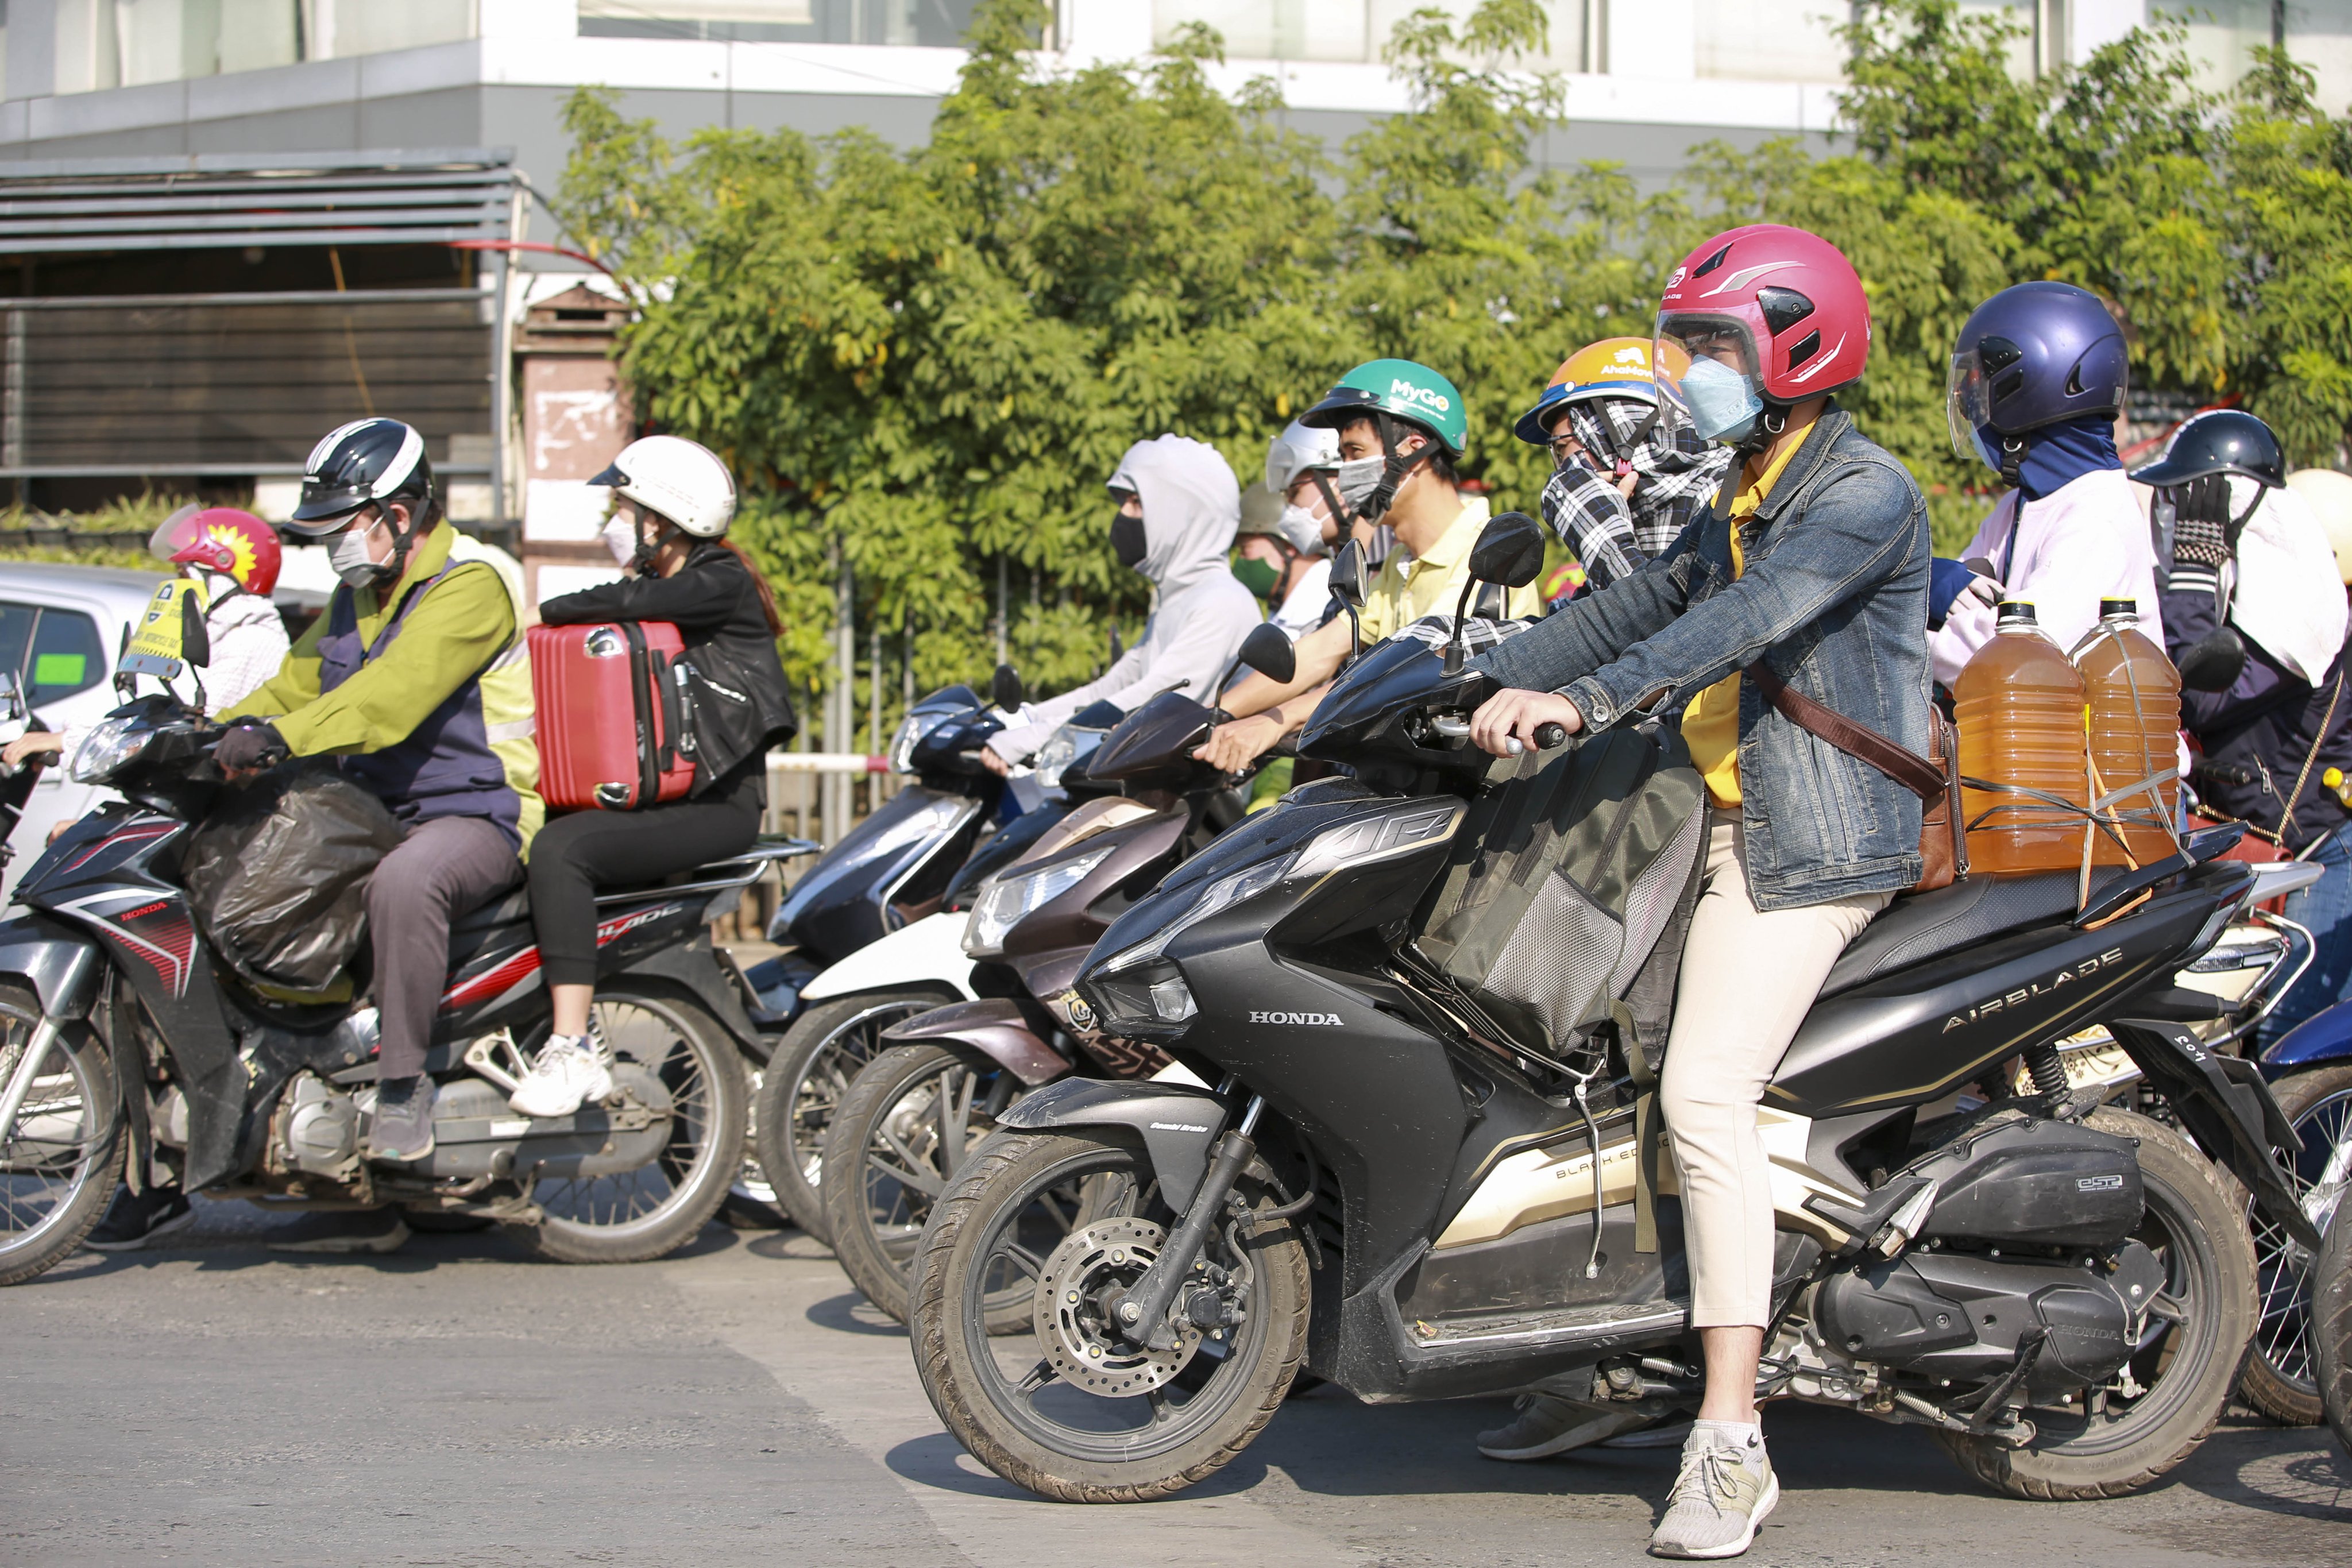 Theo Cục Cảnh sát giao thông (Bộ Công an), trong buổi chiều 3/5, tình hình trên các tuyến đường cao tốc hướng vào thành phố Hà Nội giao thông thuận lợi.